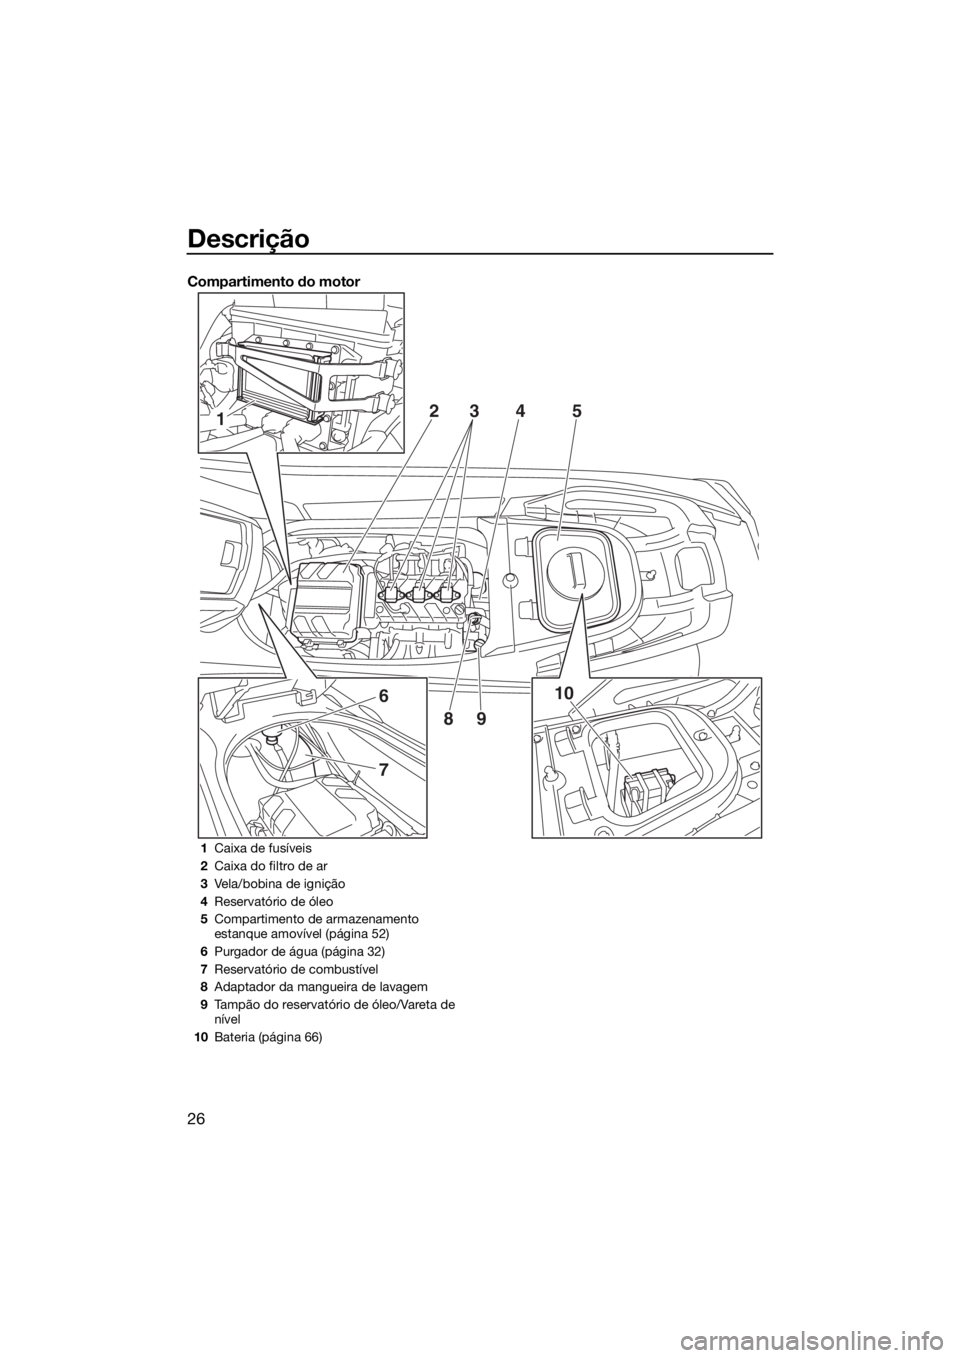 YAMAHA VX 2017  Manual de utilização (in Portuguese) Descrição
26
Compartimento do motor
1
6
7
10 2
345
89
1Caixa de fusíveis
2Caixa do filtro de ar
3Vela/bobina de ignição
4Reservatório de óleo
5Compartimento de armazenamento 
estanque amovível